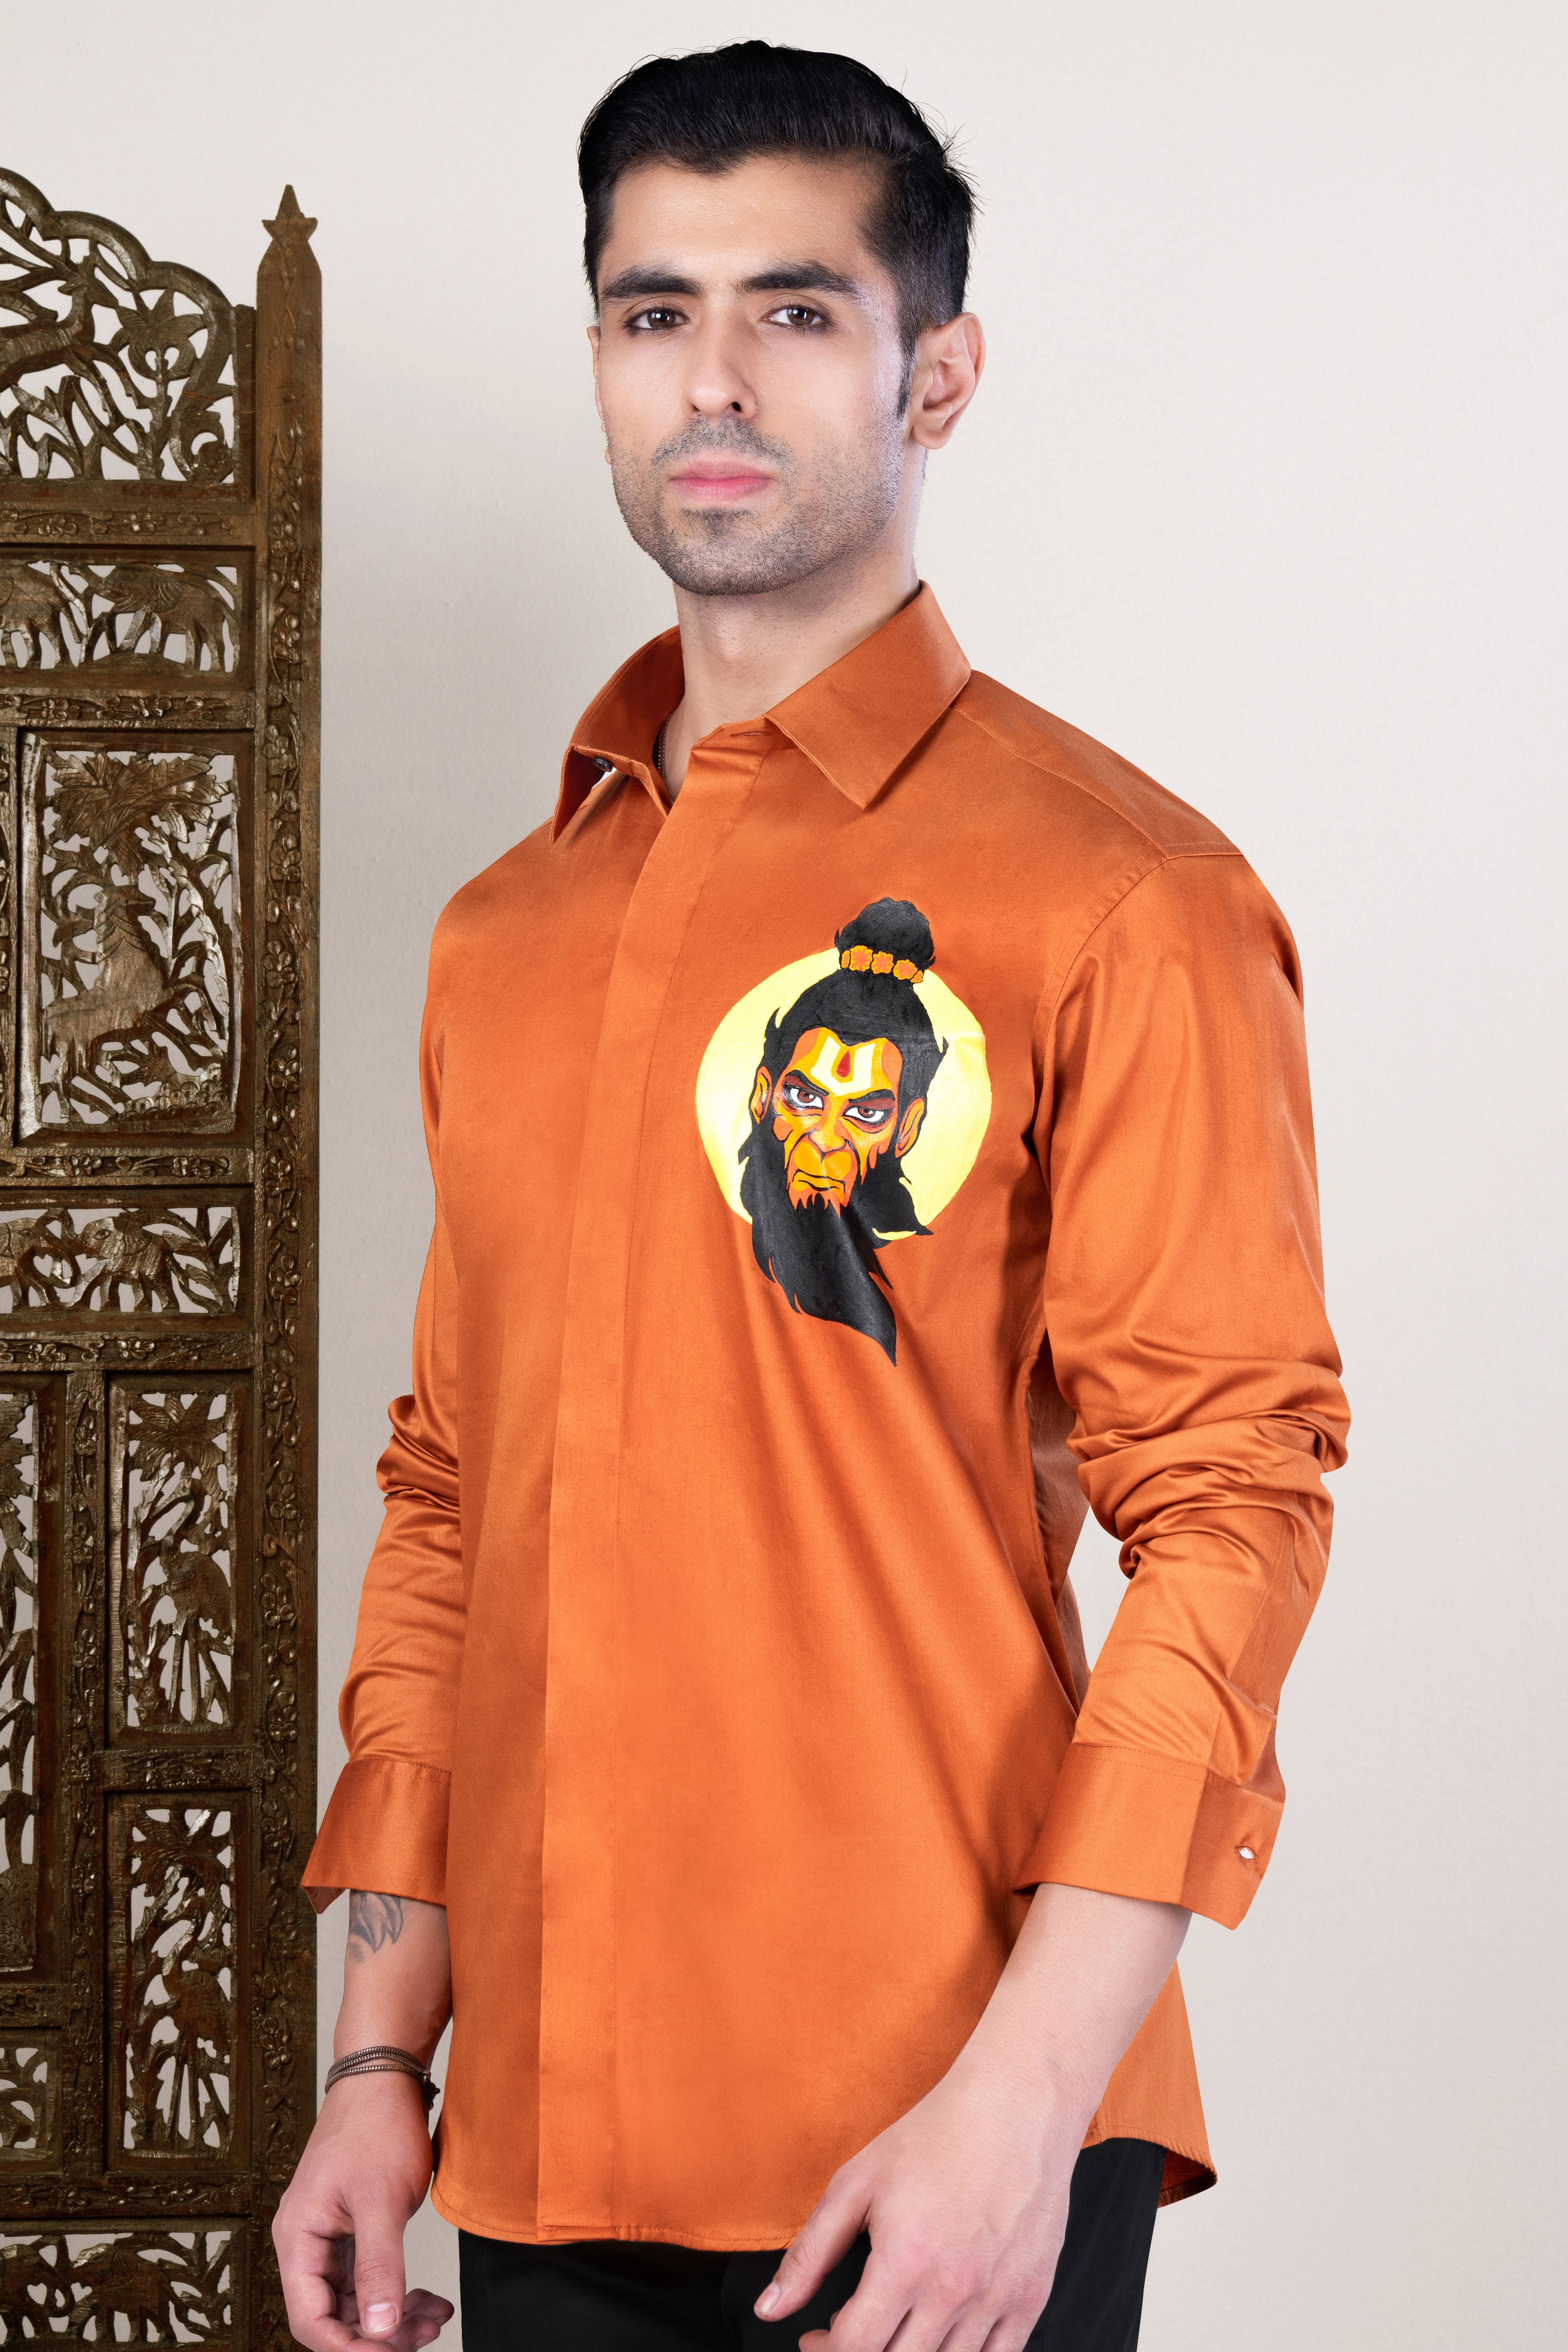 Sienna Orange Lord Hanuman Hand Painted Subtle Sheen Super Soft Premium Cotton Designer Shirt 12167-NP-BLK-P782-38, 12167-NP-BLK-P782-H-38, 12167-NP-BLK-P782-39, 12167-NP-BLK-P782-H-39, 12167-NP-BLK-P782-40, 12167-NP-BLK-P782-H-40, 12167-NP-BLK-P782-42, 12167-NP-BLK-P782-H-42, 12167-NP-BLK-P782-44, 12167-NP-BLK-P782-H-44, 12167-NP-BLK-P782-46, 12167-NP-BLK-P782-H-46, 12167-NP-BLK-P782-48, 12167-NP-BLK-P782-H-48, 12167-NP-BLK-P782-50, 12167-NP-BLK-P782-H-50, 12167-NP-BLK-P782-52, 12167-NP-BLK-P782-H-52